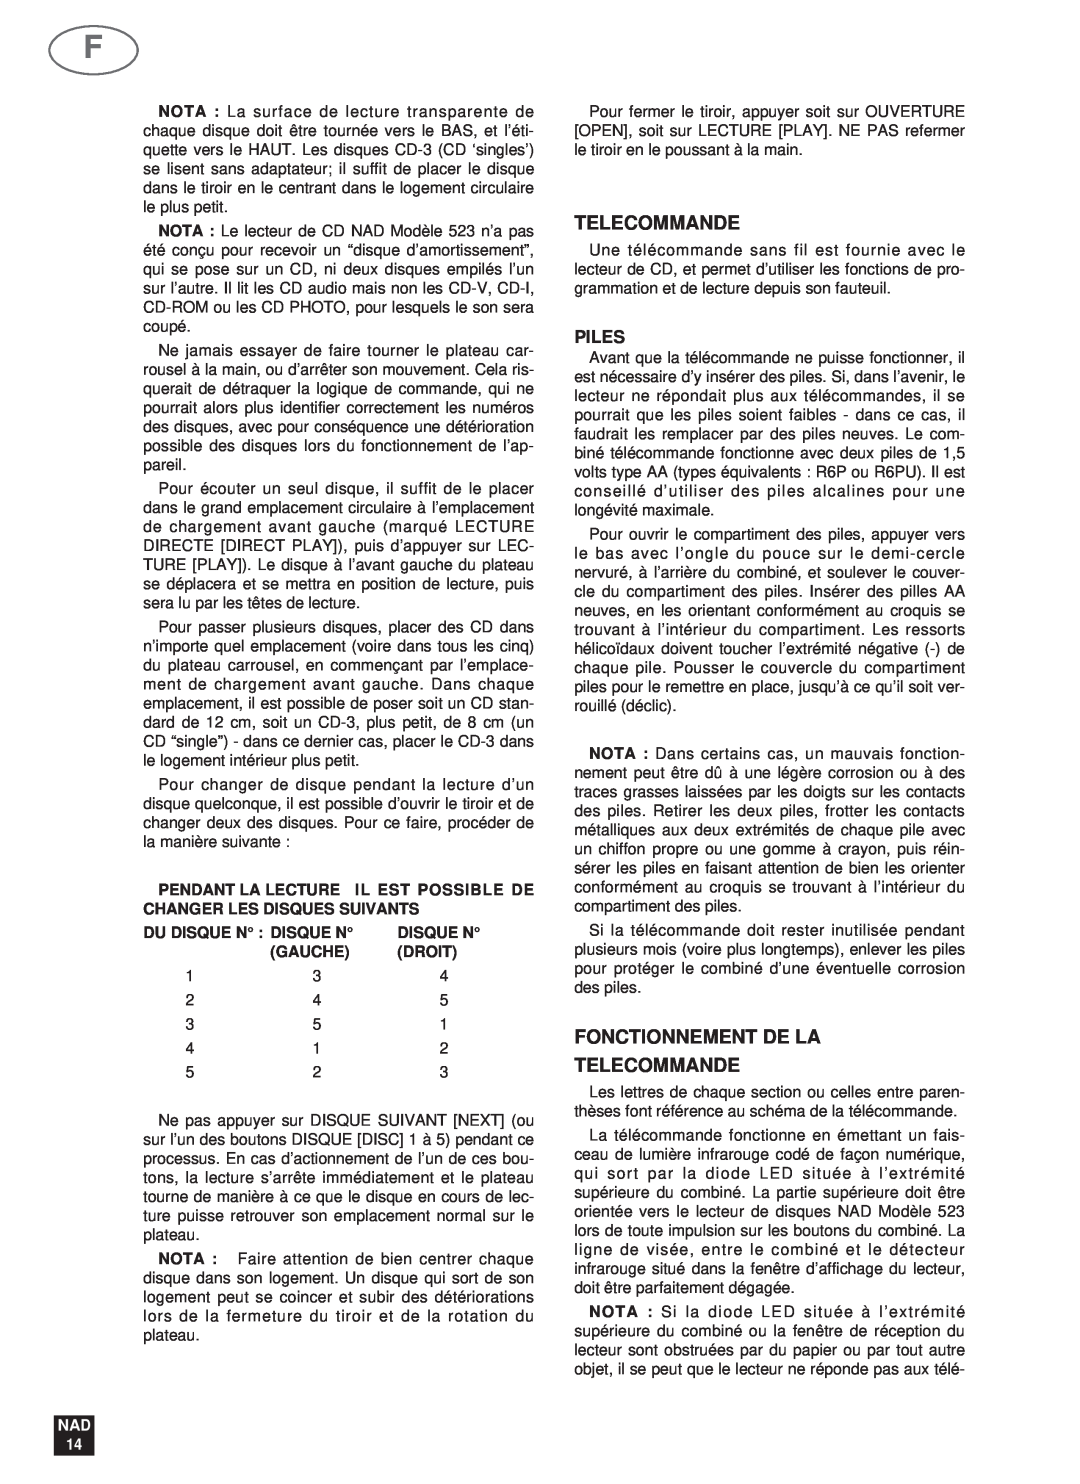 NAD 523 owner manual Fonctionnement De La Telecommande, Piles, Du Disque N : Disque N, Gauche, Droit, NAD 14 